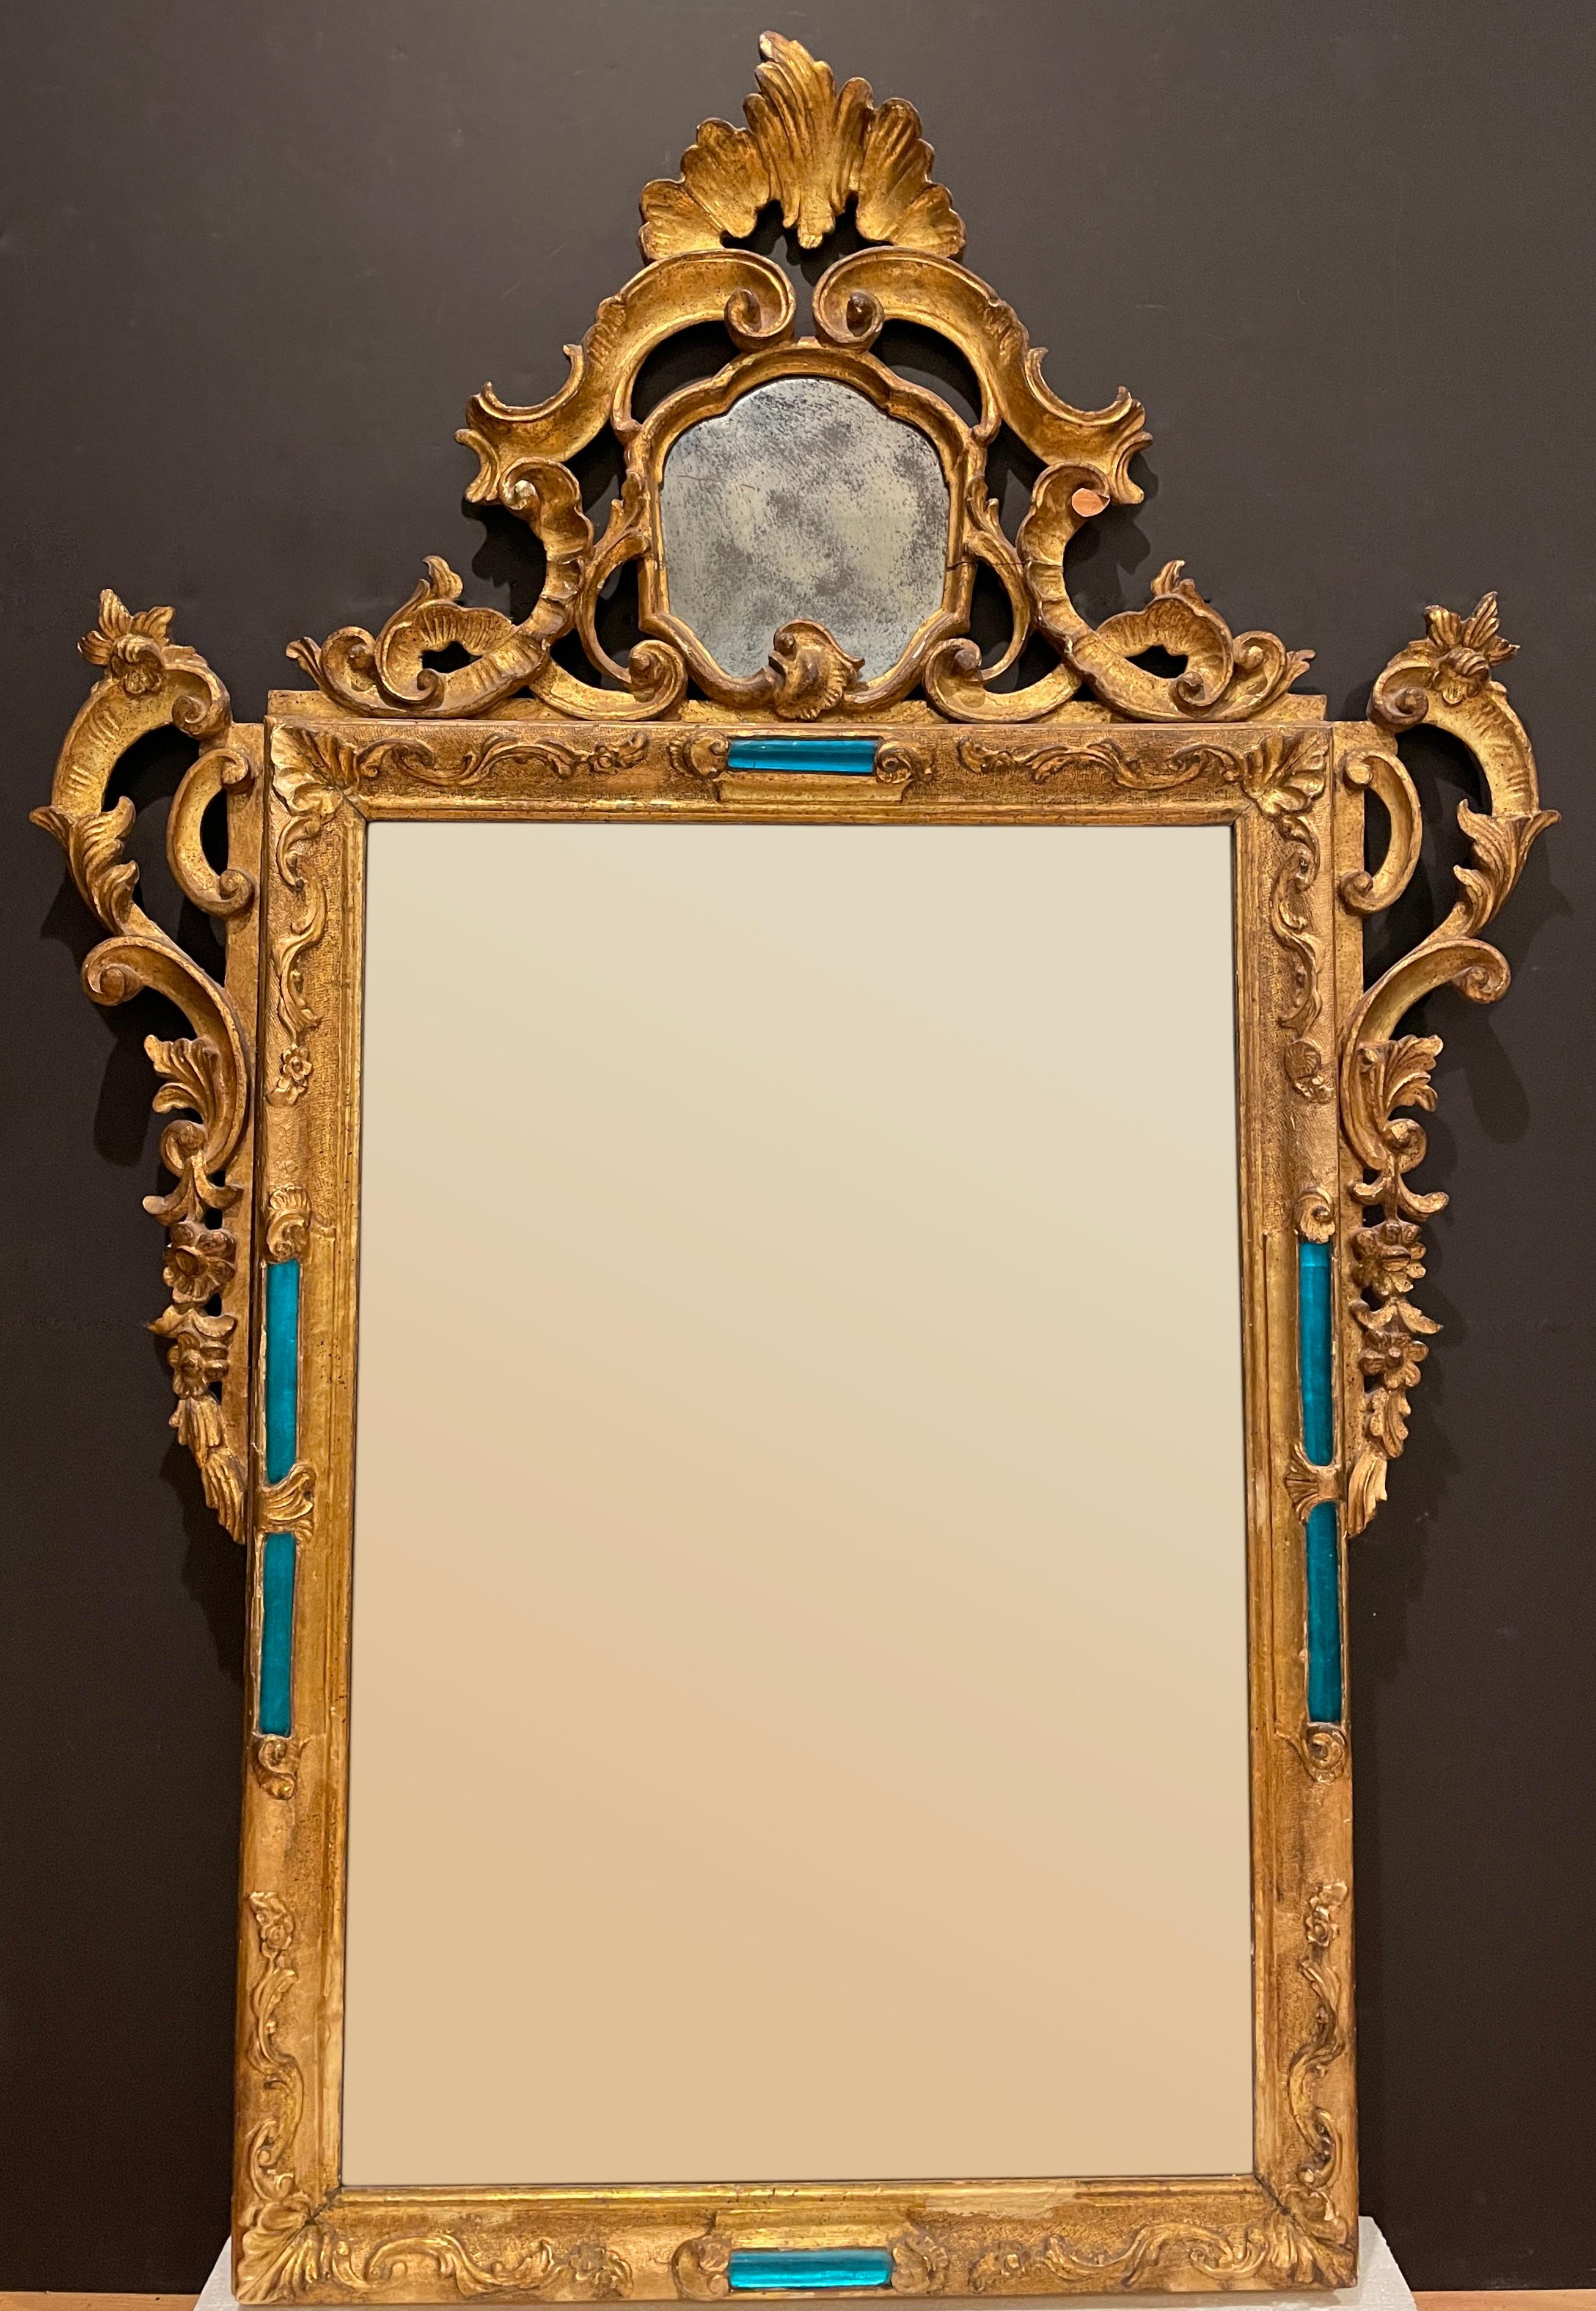 Sehr ungewöhnlich 19. Jahrhundert Barock Rokoko venezianischen geschnitzt Vergoldung Spiegel. Mit zwei verspiegelten Paneelen und aquablauen/blauen Stäben aus mundgeblasenem Glas sowie einem Originalspiegel mit fleckigen Versilberungsschäden.